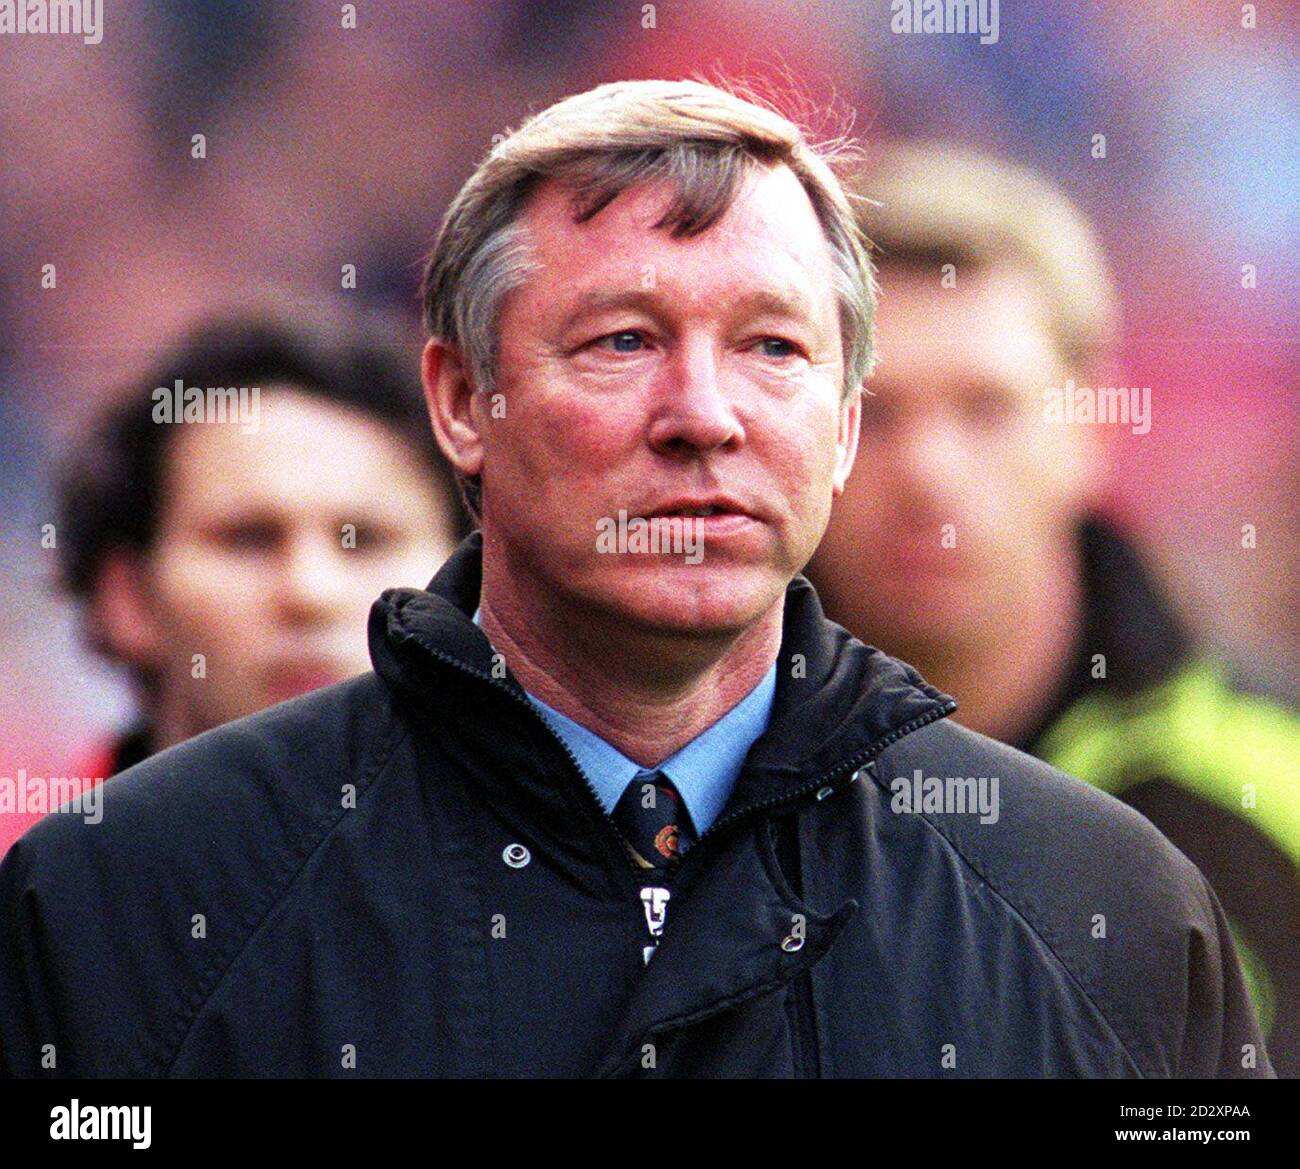 Déception pour le Manager de Manchester United Alex Ferguson alors qu'il quitte Old Trafford après avoir perdu son côté à Dortmund dans la Ligue des champions de l'UEFA ce soir (mercredi). PHOTO JOHN GILES.PA. Banque D'Images